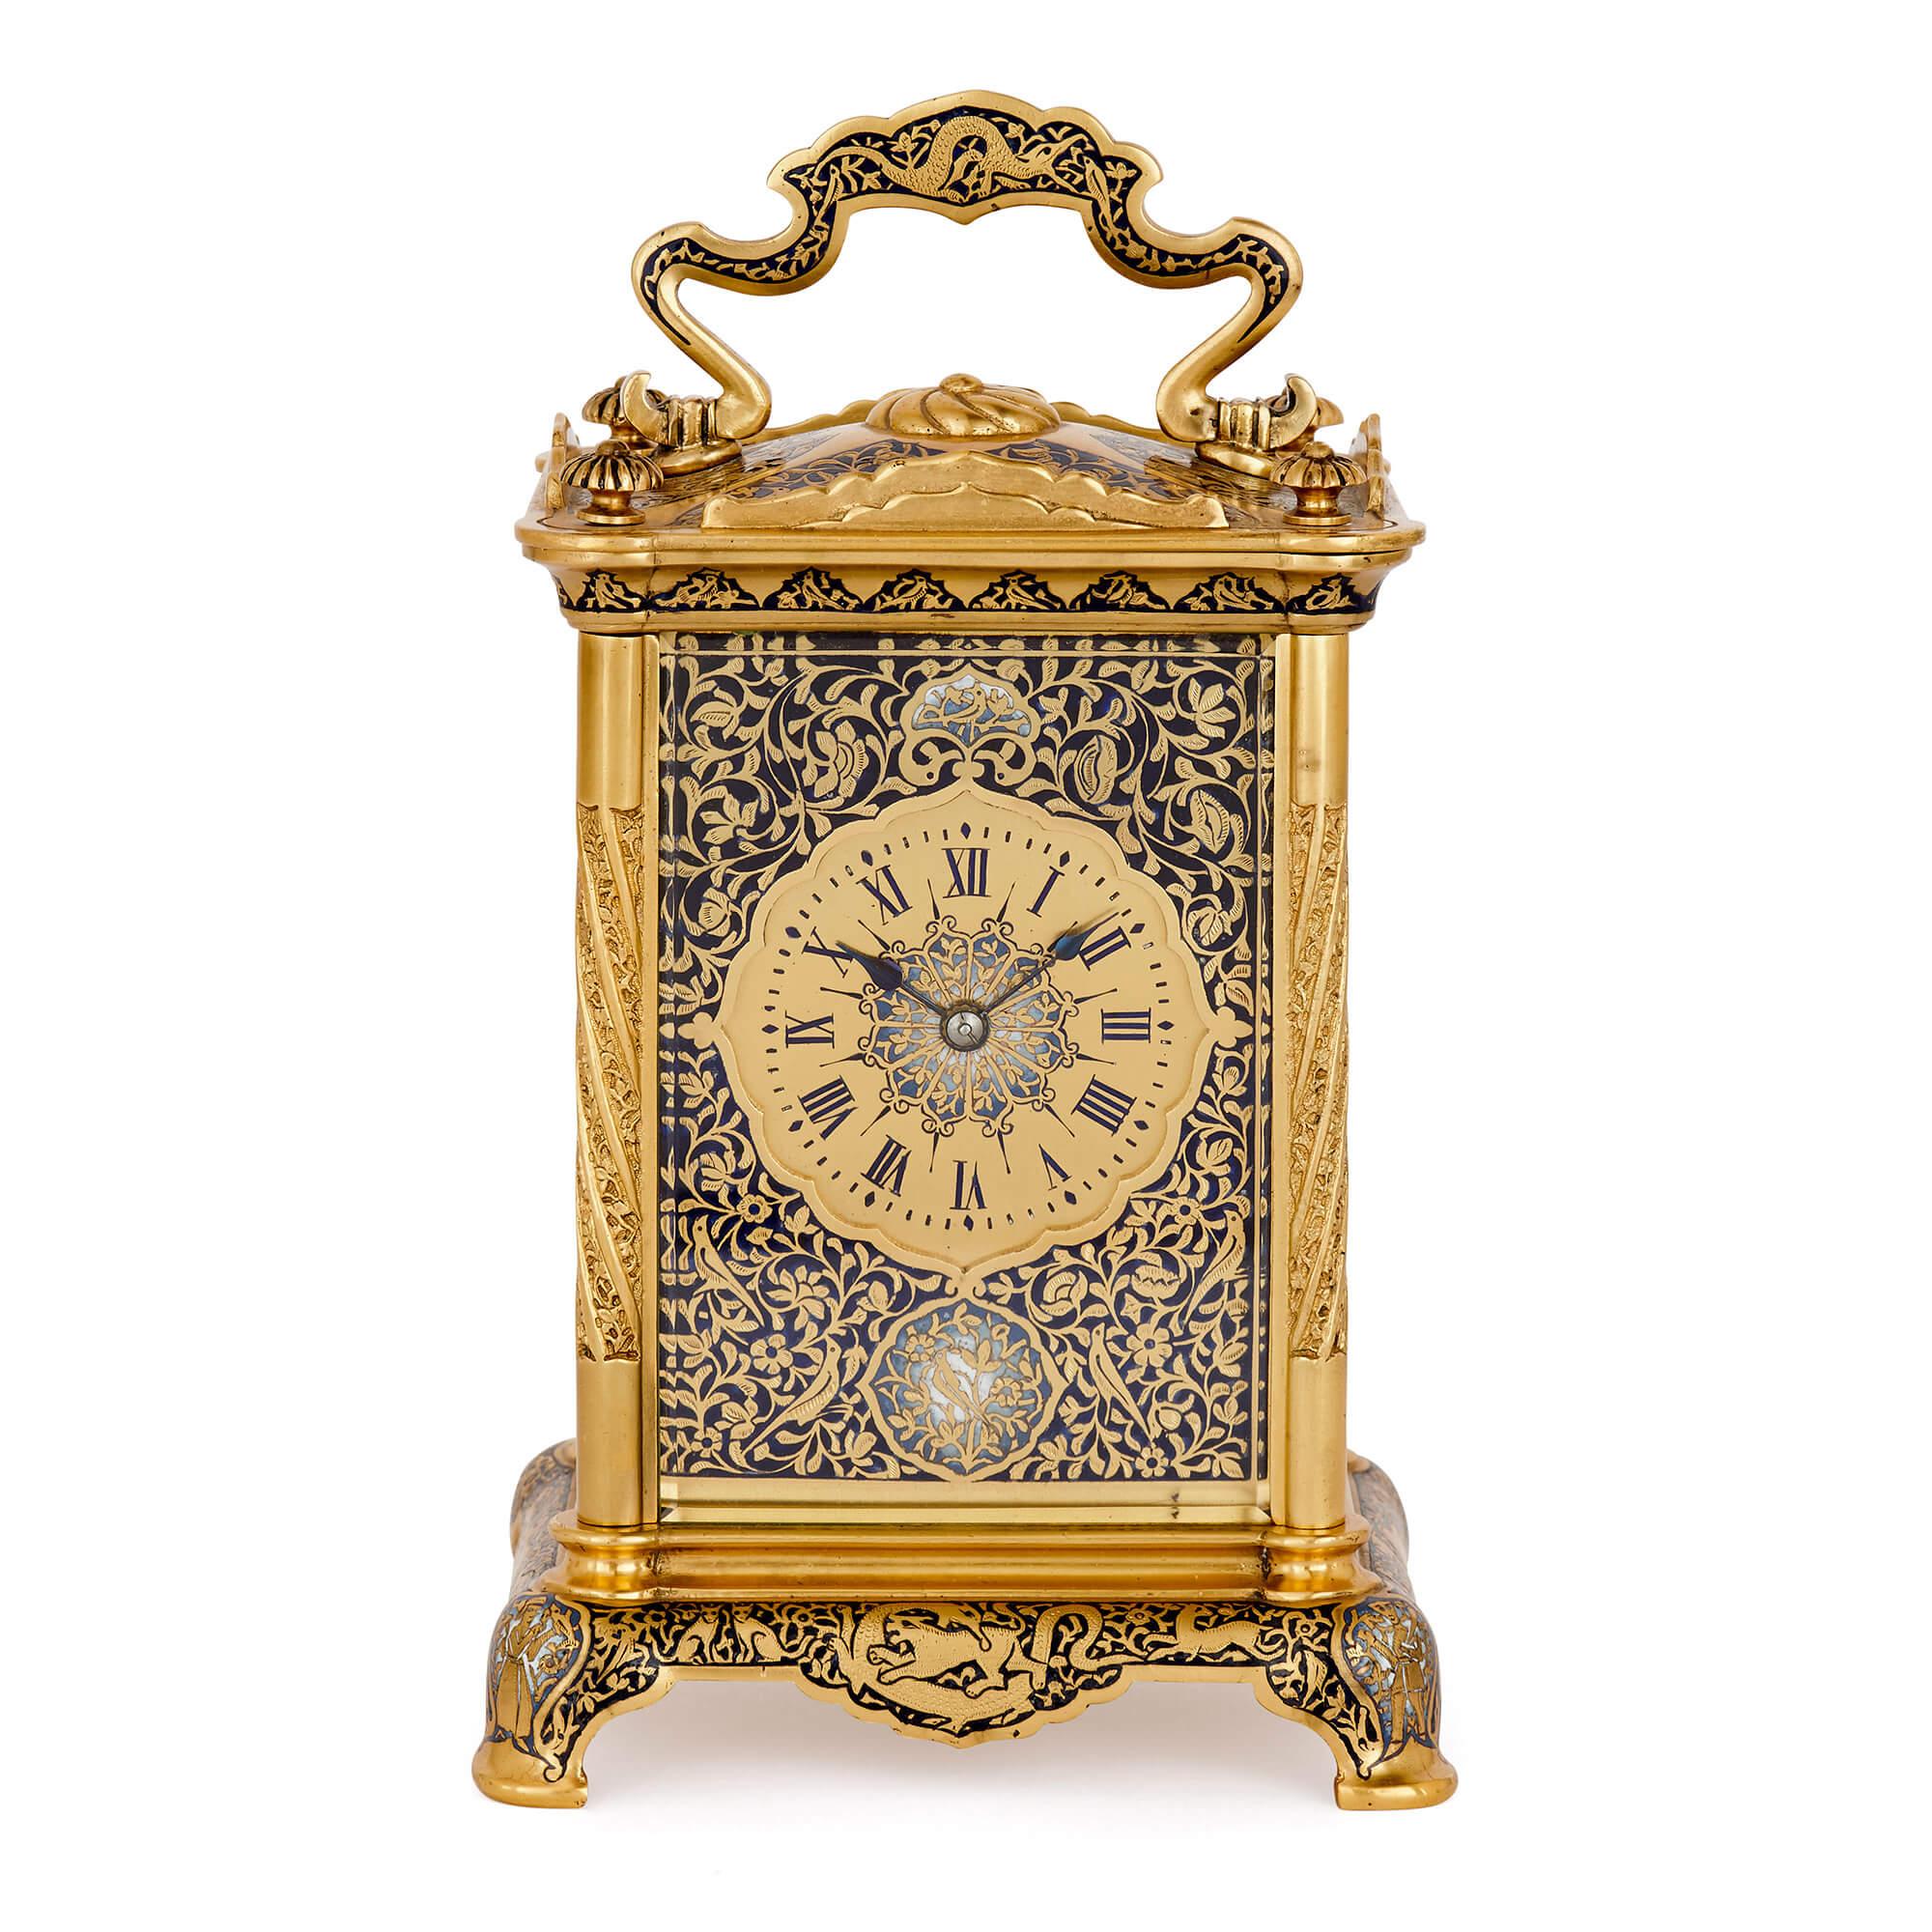 Le contraste entre le riche émail bleu, dans des teintes claires et foncées, et le bronze doré brillant confère à cette horloge de carrosse un aspect somptueux et luxueux. D'un design intemporel, l'horloge peut être utilisée dans le cadre d'une